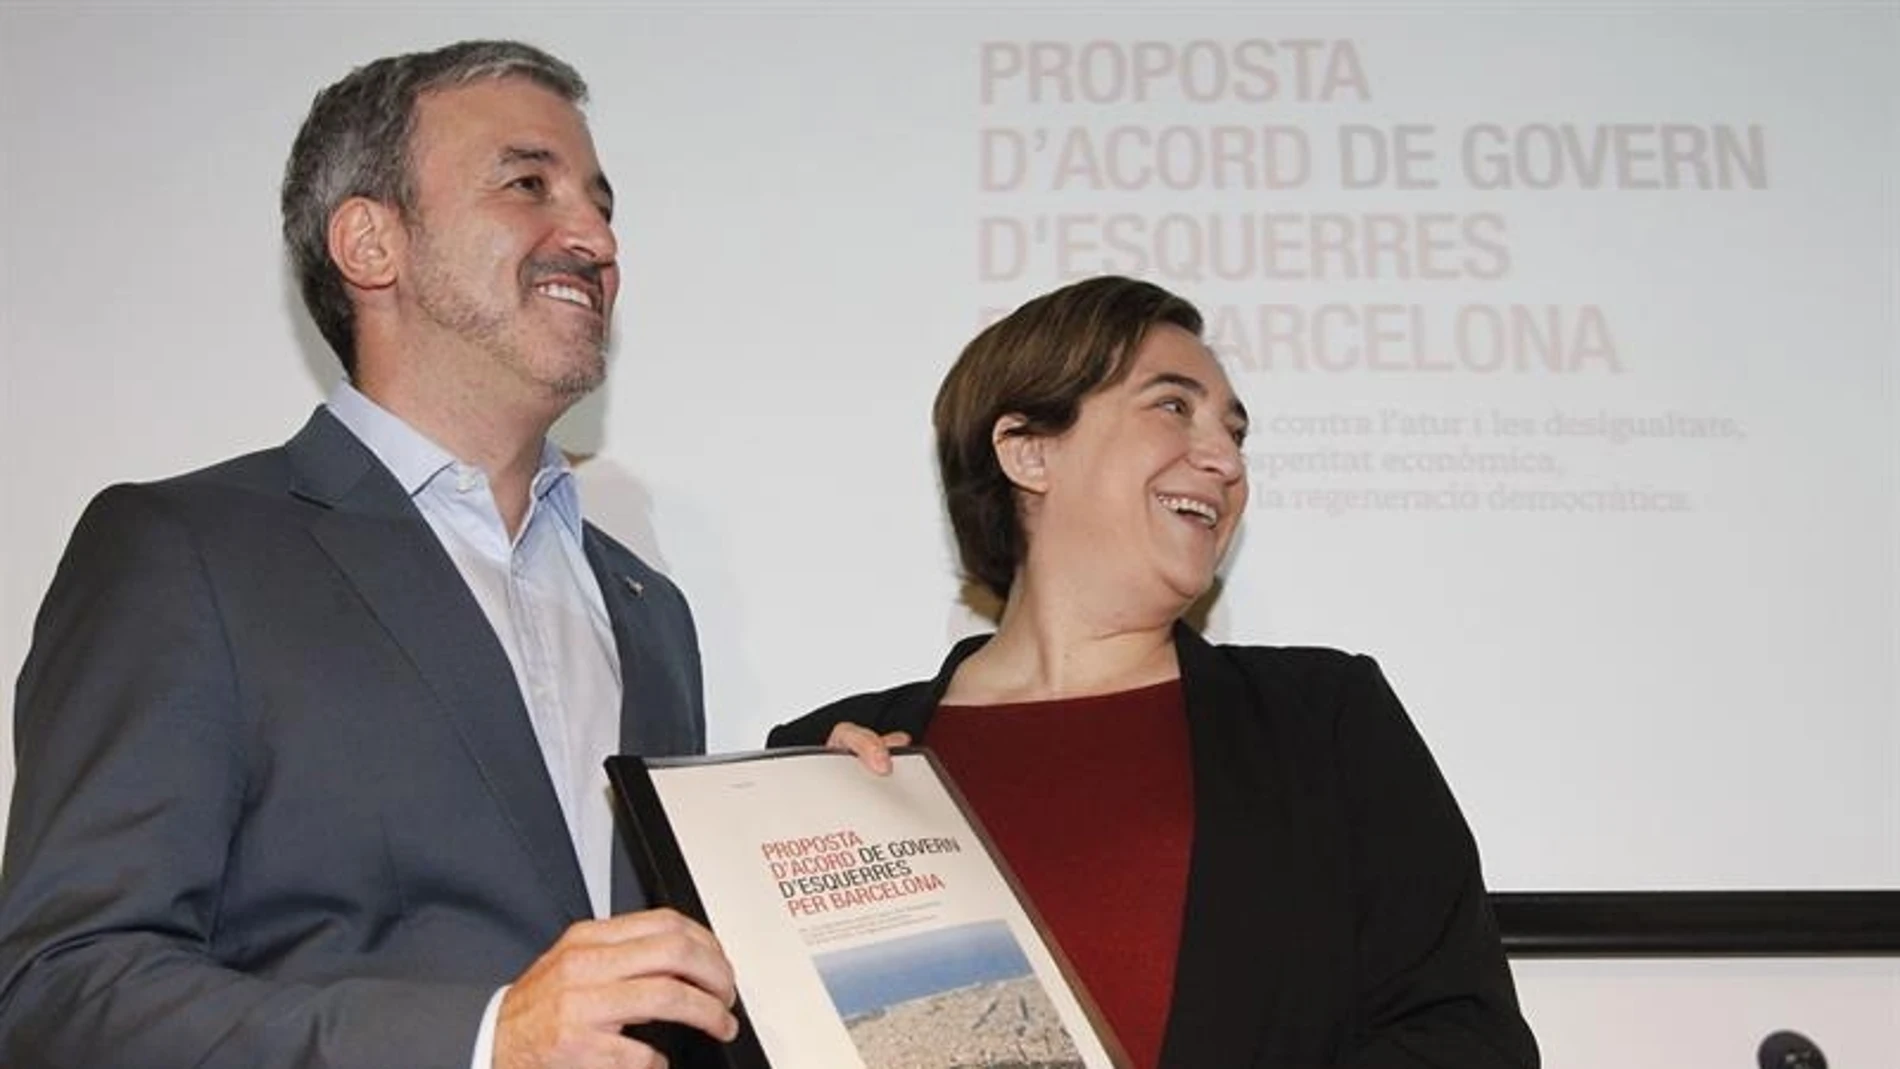 La alcaldesa de Barcelona, Ada Colau, y el presidente del grupo municipal socialista, Jaume Collboni